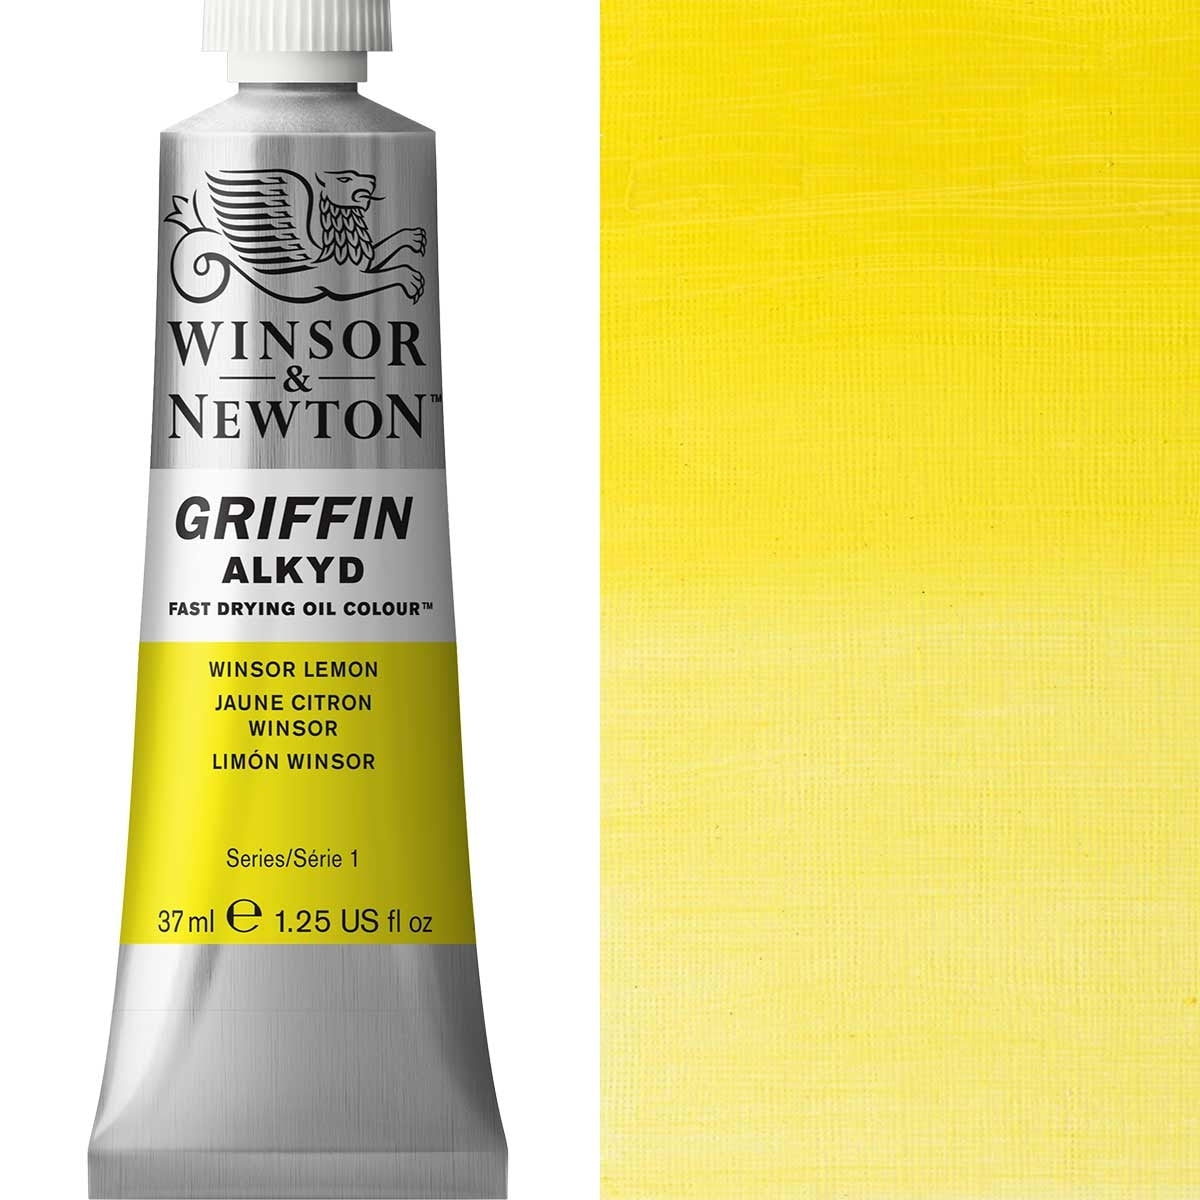 Winsor und Newton - Griffin Alkyd Ölfarbe - 37 ml - Winsor -Zitrone